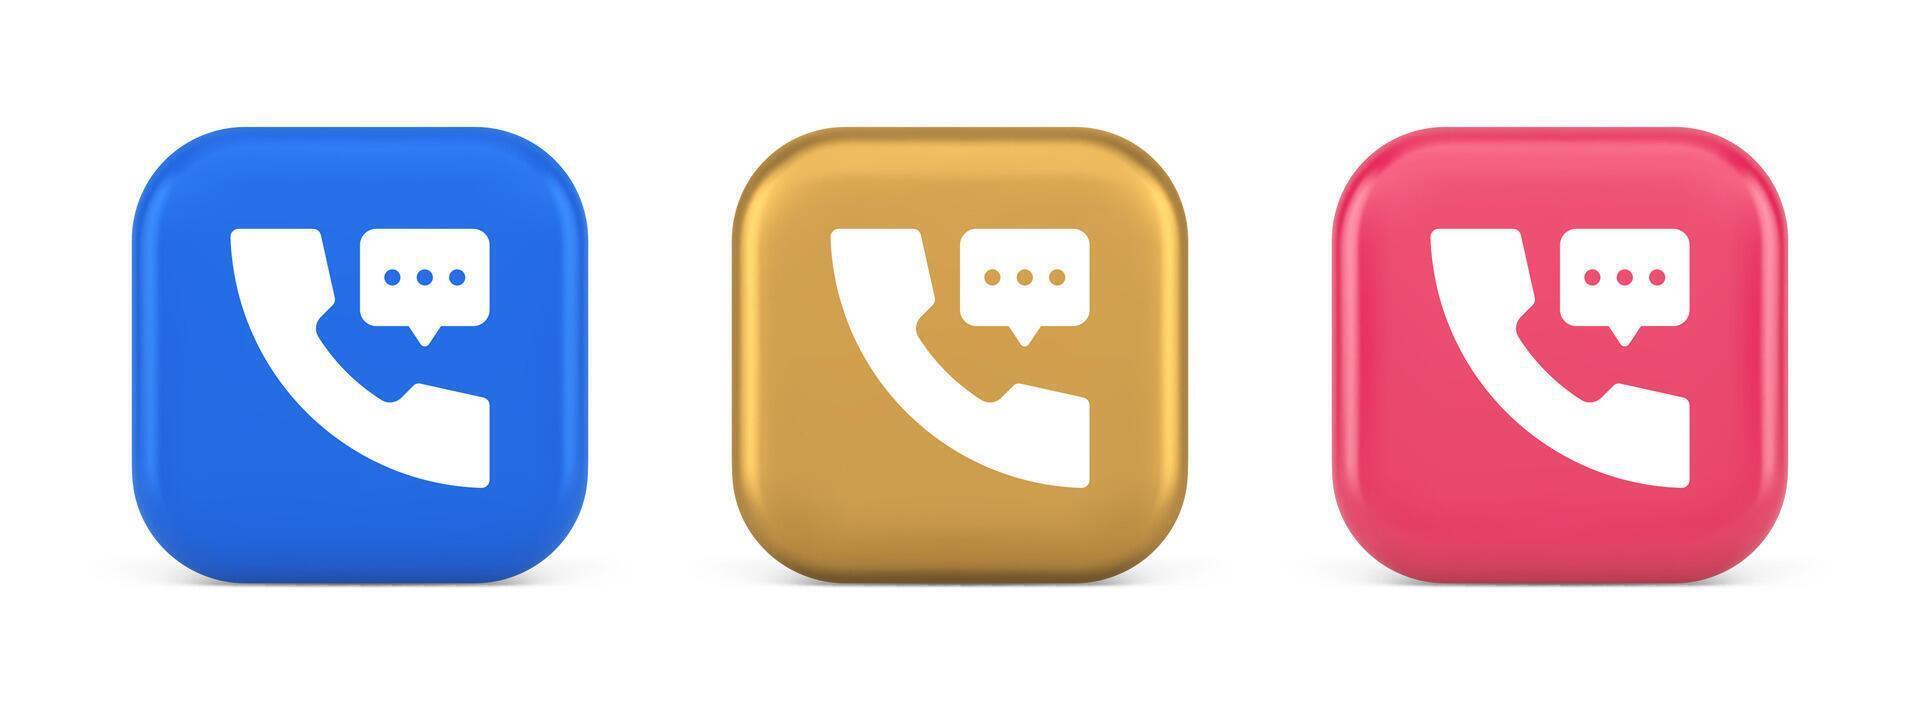 assistenza telefonica assistenza Chiacchierare consulenza telefono cliente supporto pulsante 3d realistico icona vettore